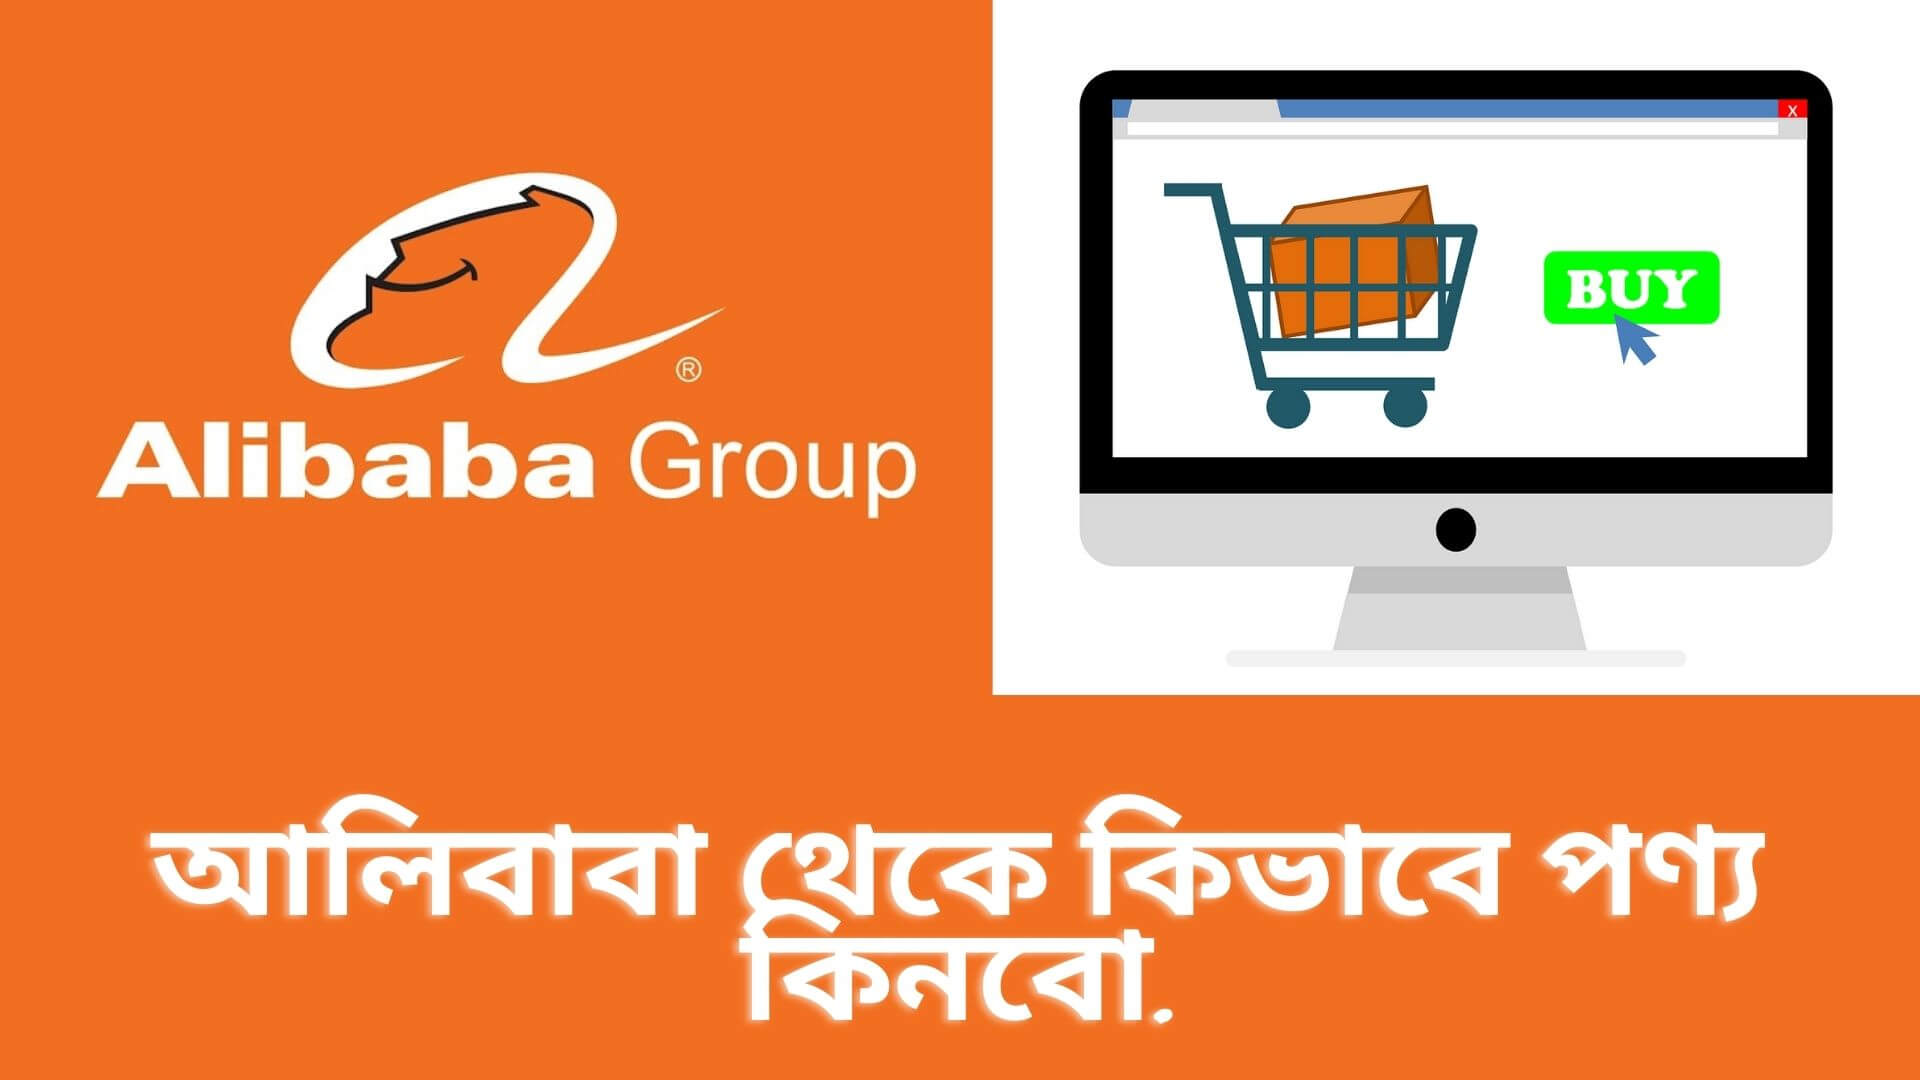 আলিবাবা থেকে কিভাবে পণ্য কিনবো | How To Buy Products From Alibaba